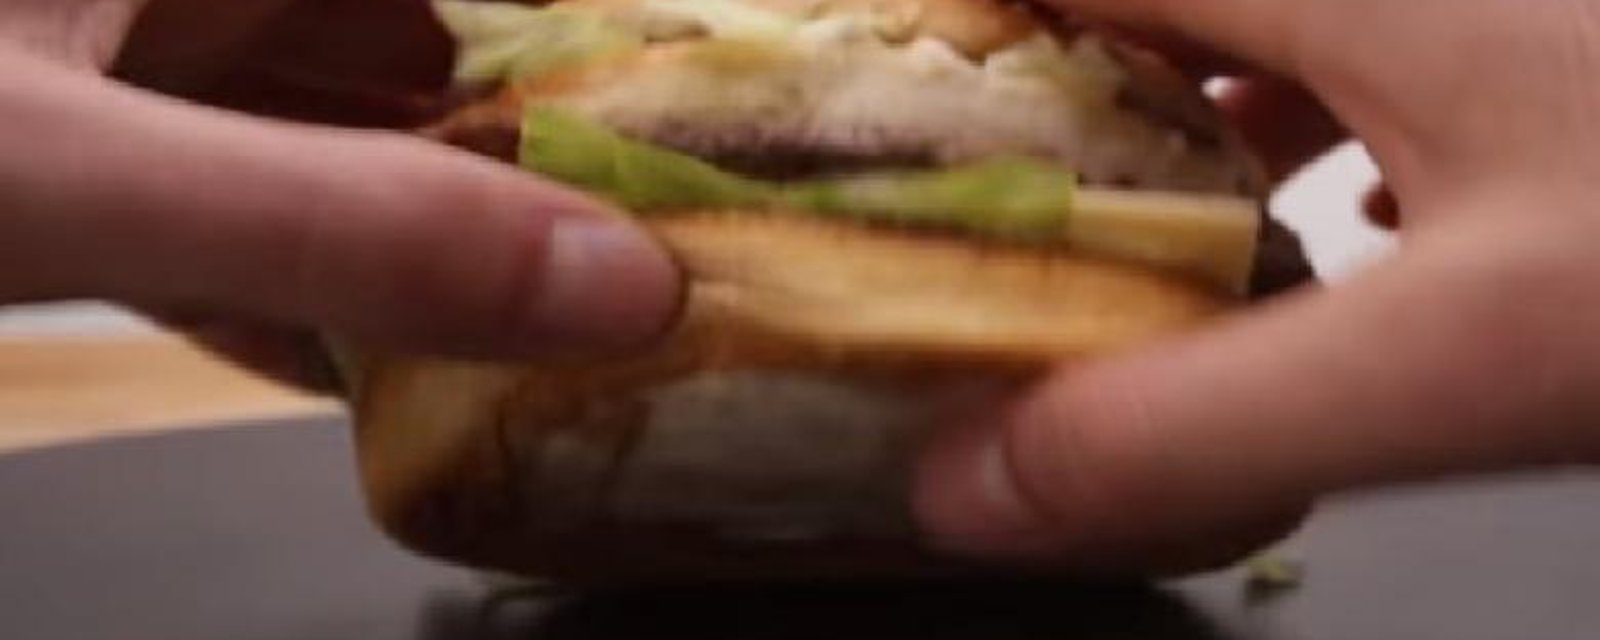 Comment répliquer le vrai bon goût du Big Mac à la maison: Un indice... Le secret est dans la sauce!